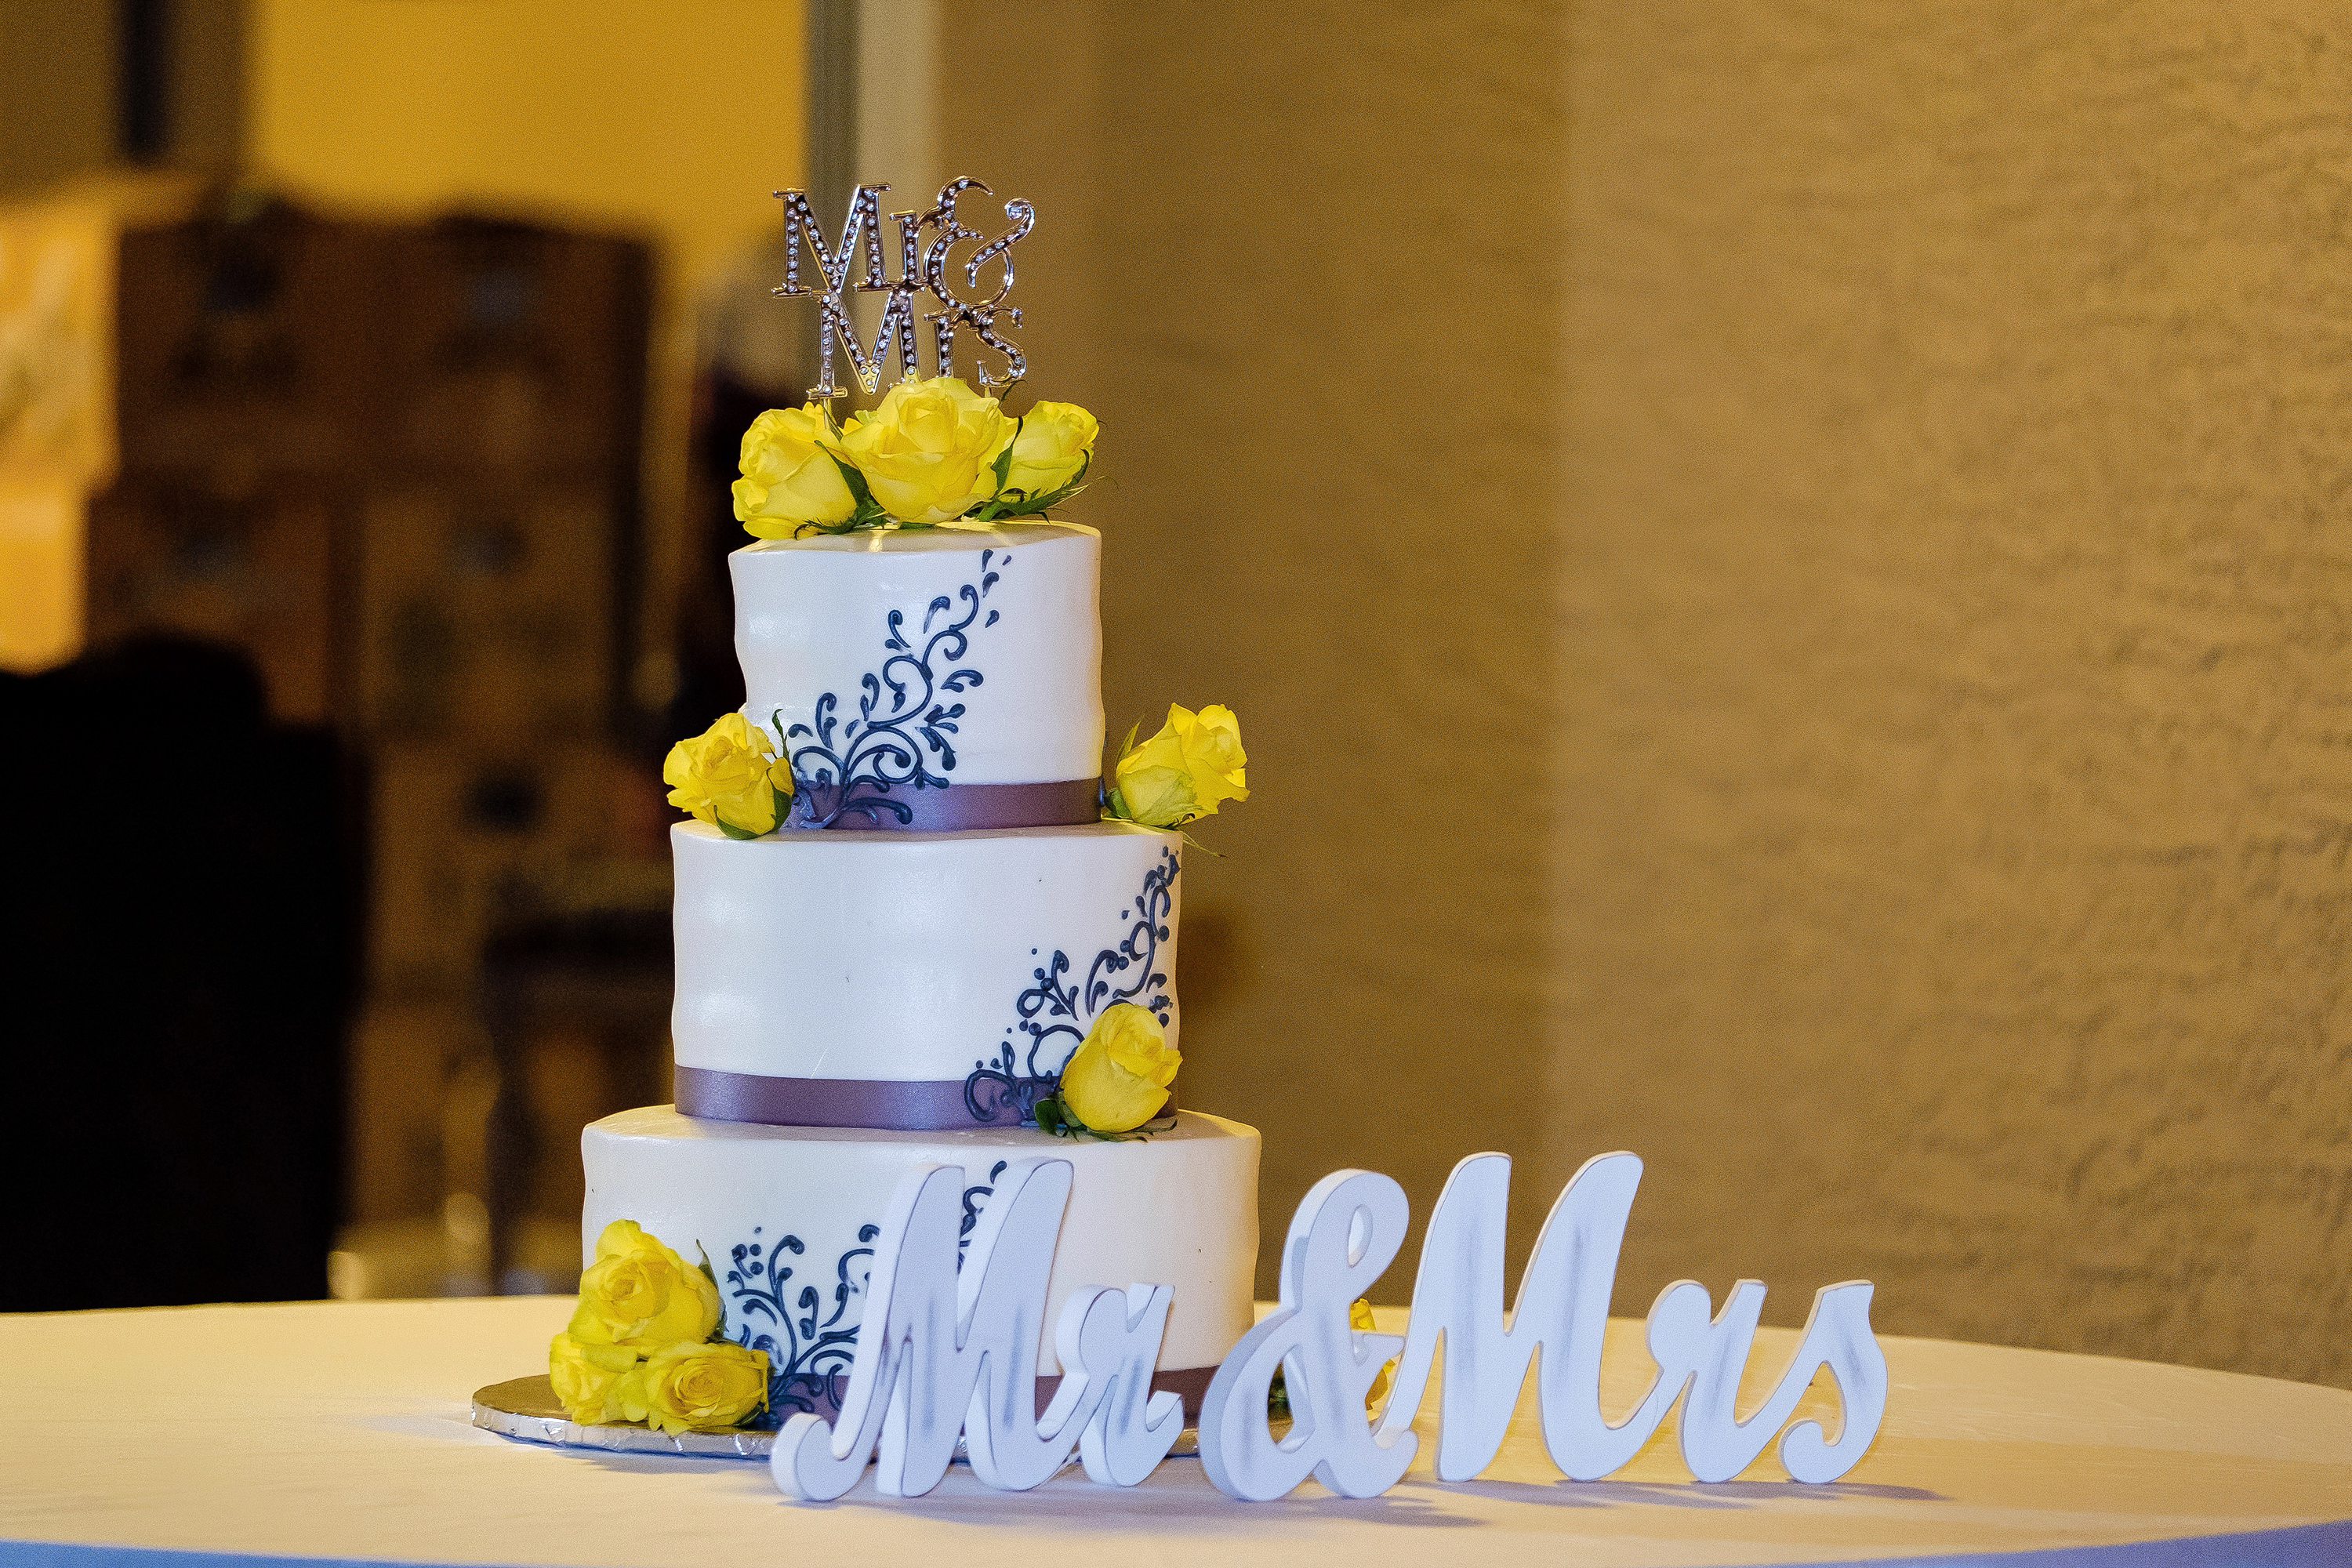 Wedding cake at a backyard wedding reception